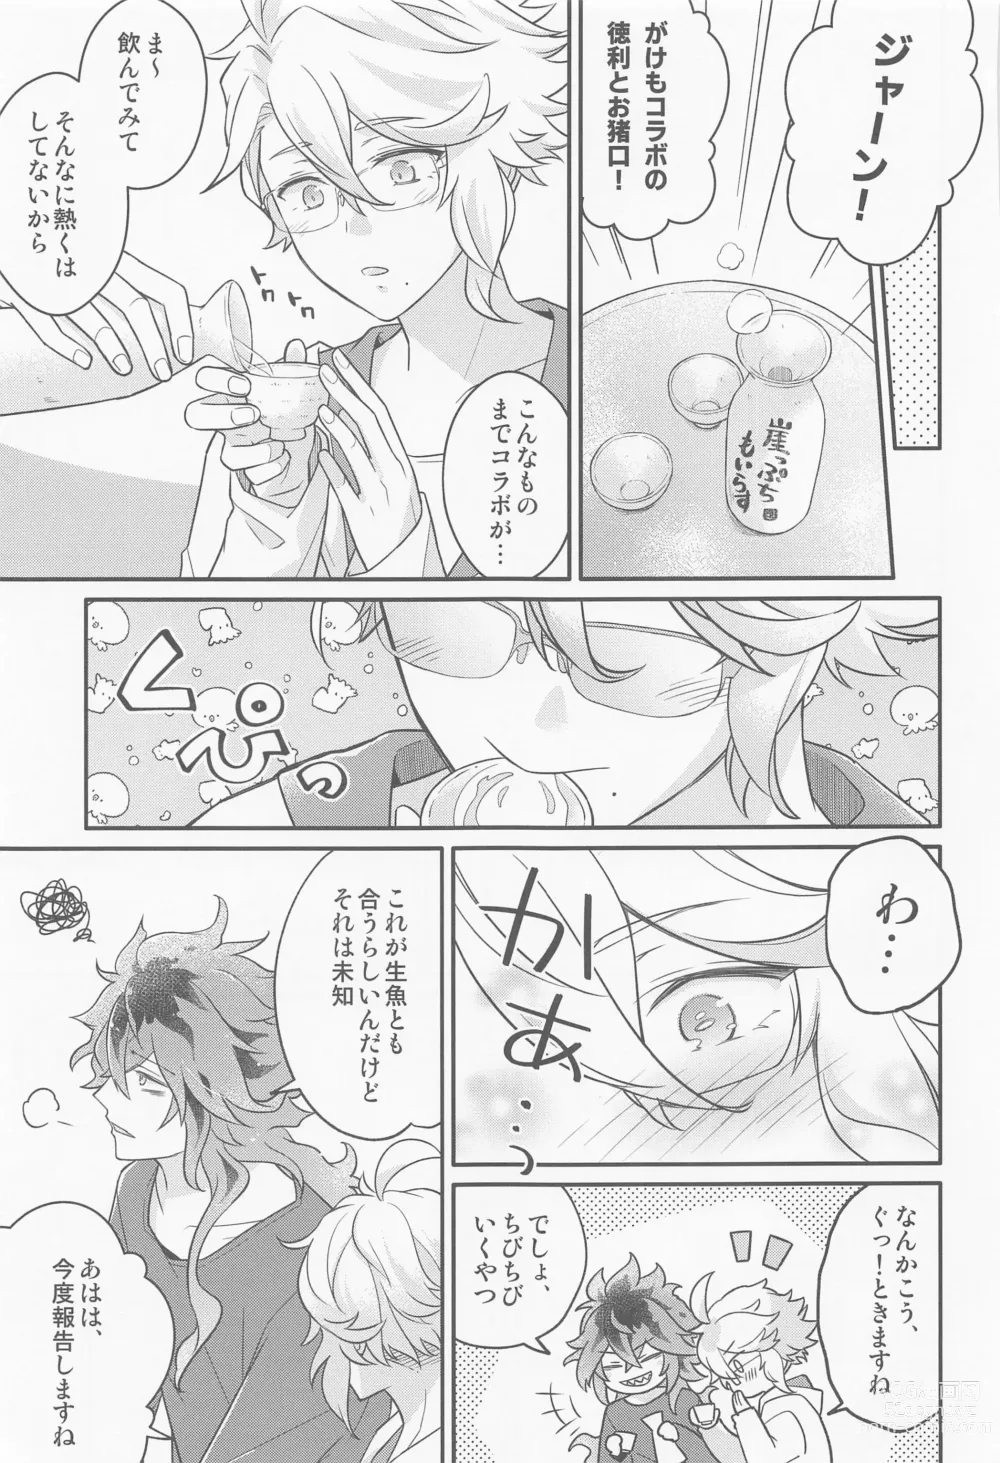 Page 14 of doujinshi Ecchi Kinshichuu no Tako-chan ni Takunomi ni Sasowareta Ken